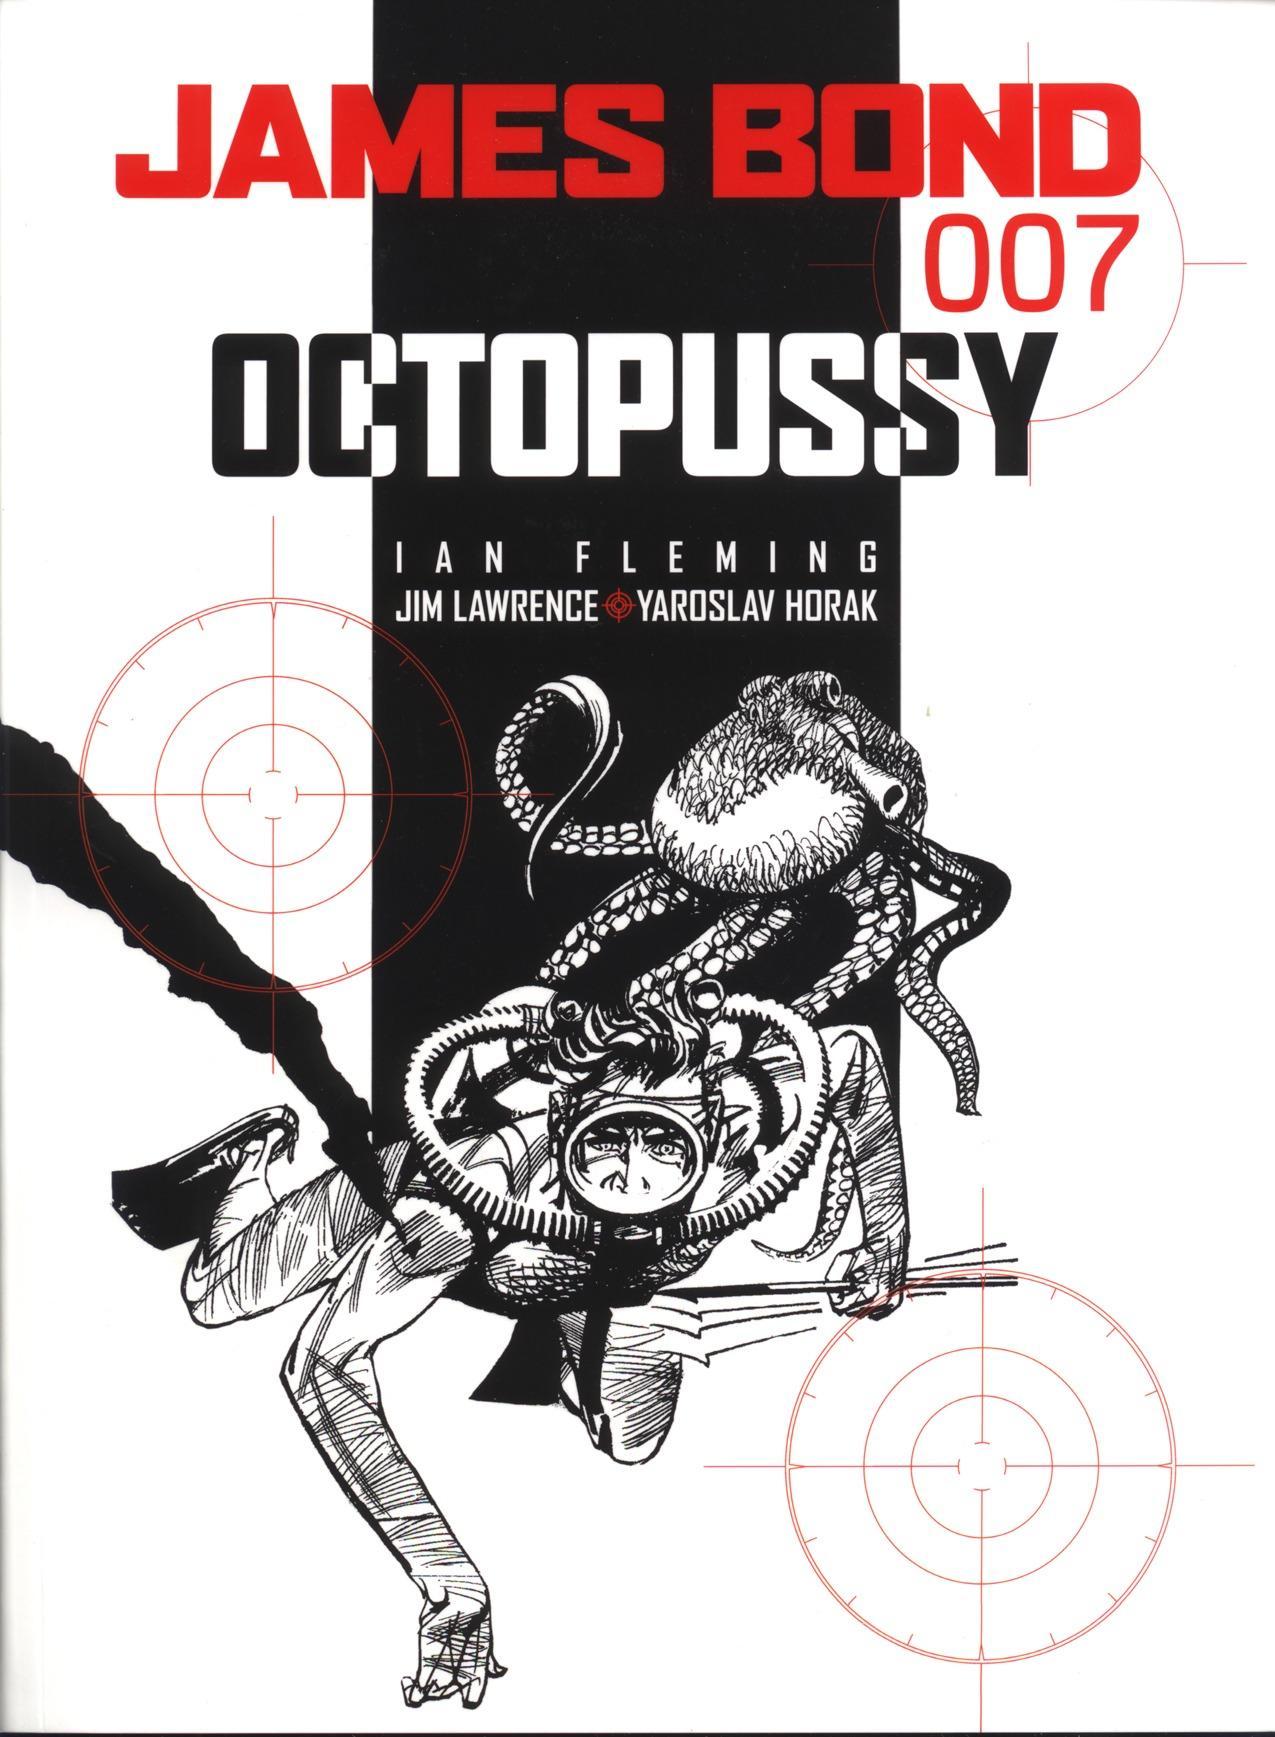 James Bond: Octopussy / Octopussy / Ian Fleming (u. a.) / Taschenbuch / James Bond / Kartoniert / Broschiert / Englisch / 2004 / Titan Books Ltd / EAN 9781840237436 - Fleming, Ian